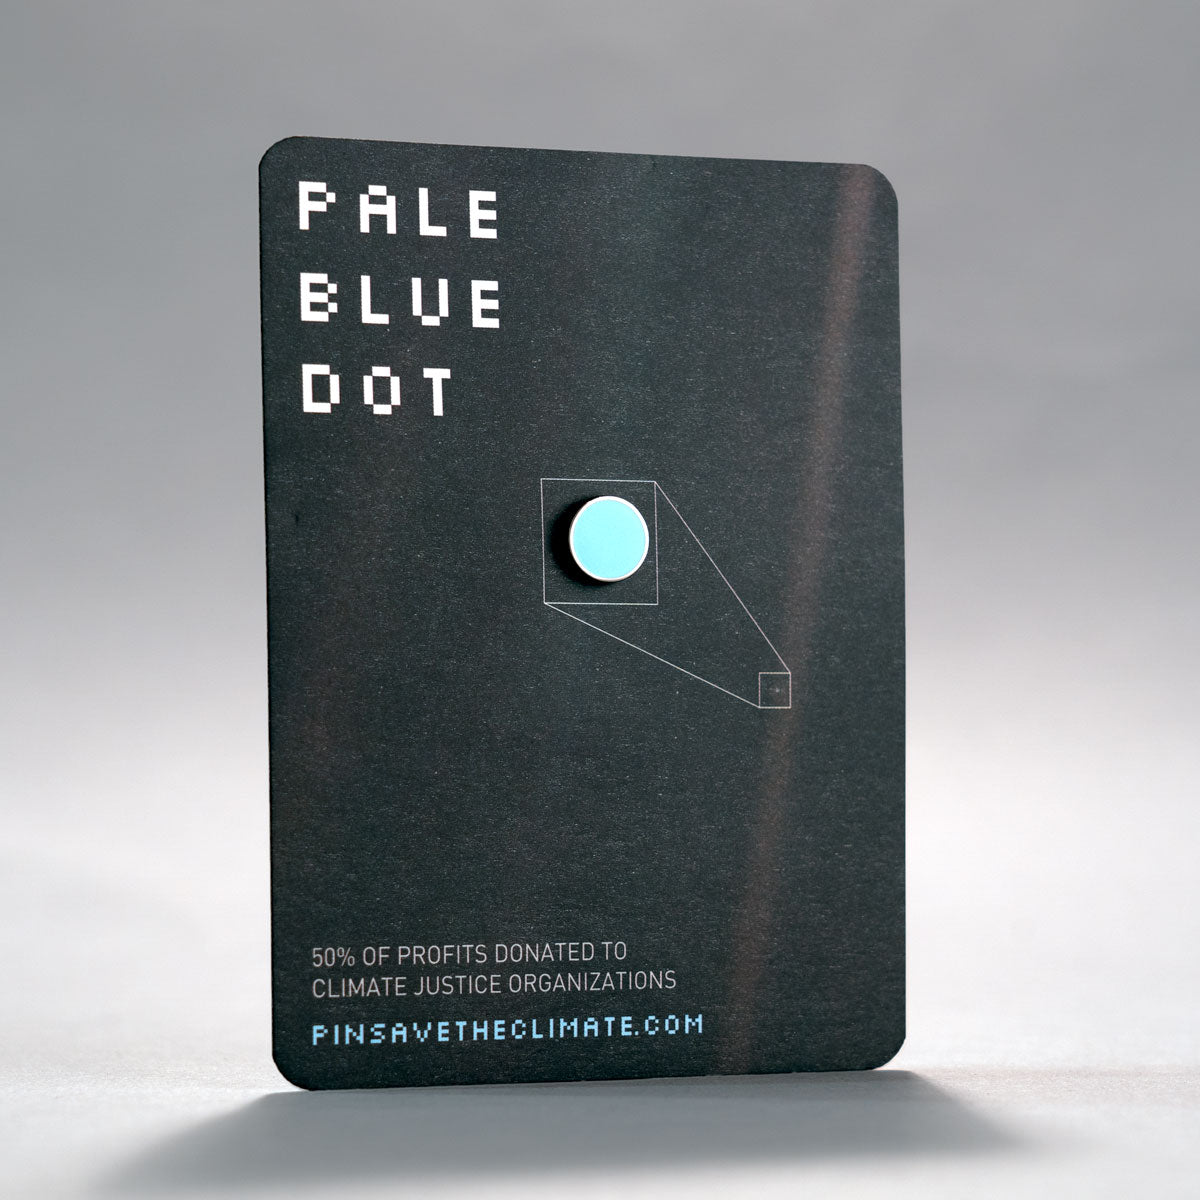 carl sagan inspired pale blue dot enamel lapel pin on backing card